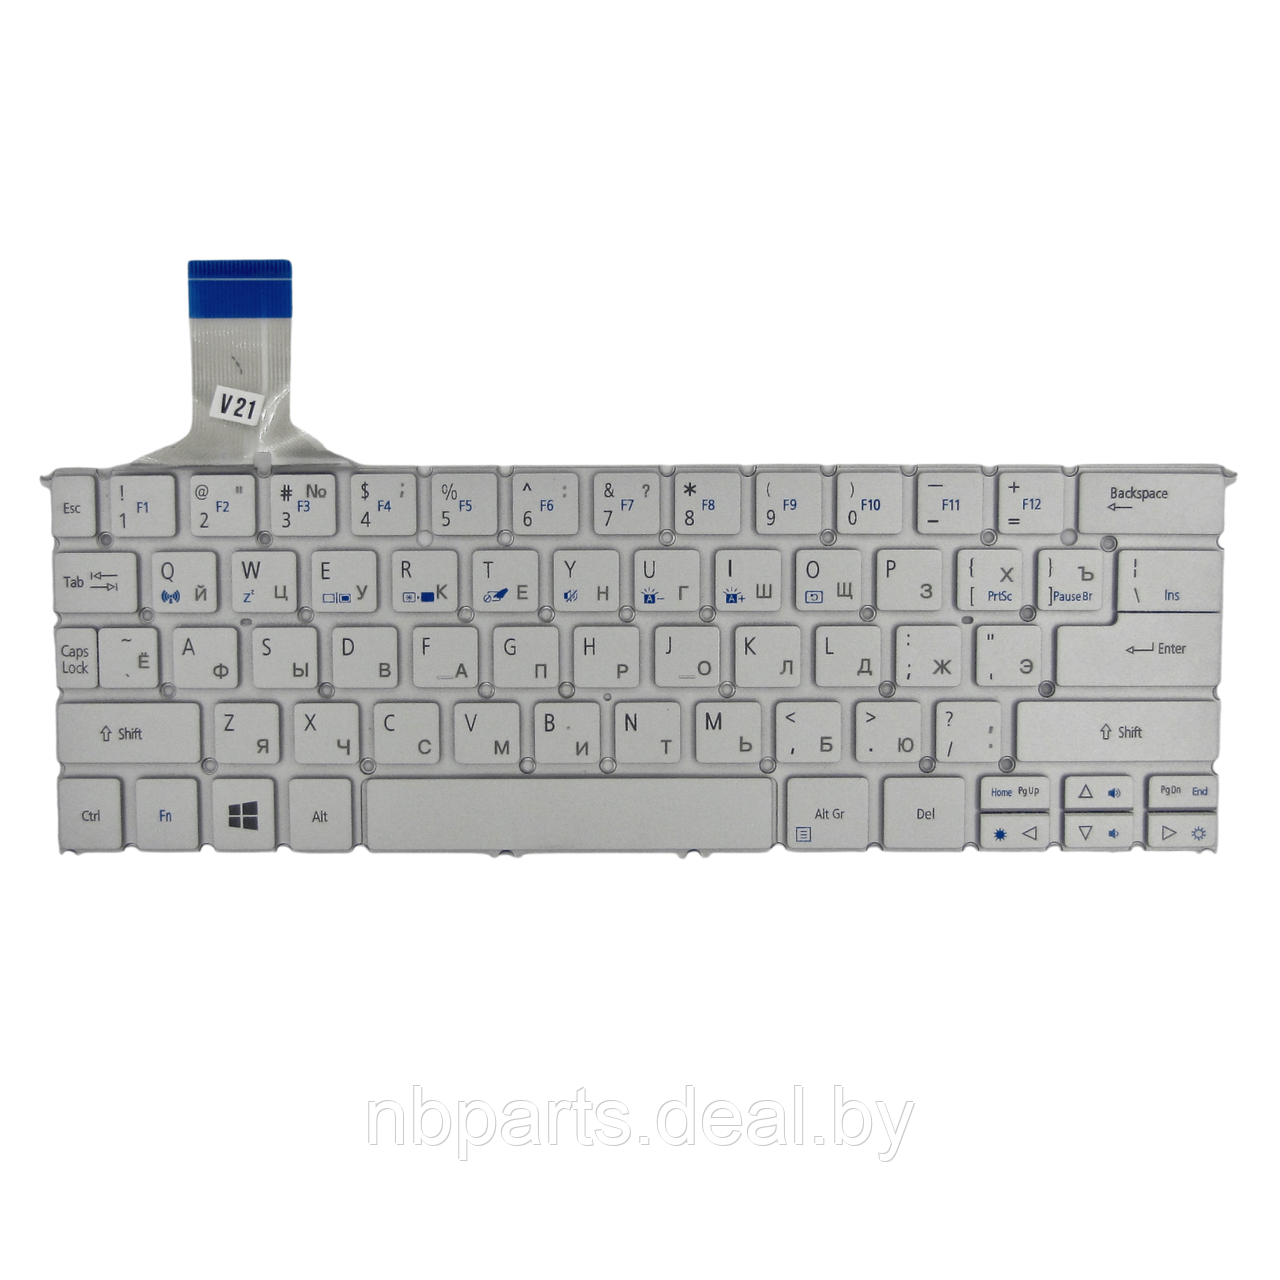 Клавиатура для ноутбука ACER Aspire S7 S7-391 P3-171, серебро, RU